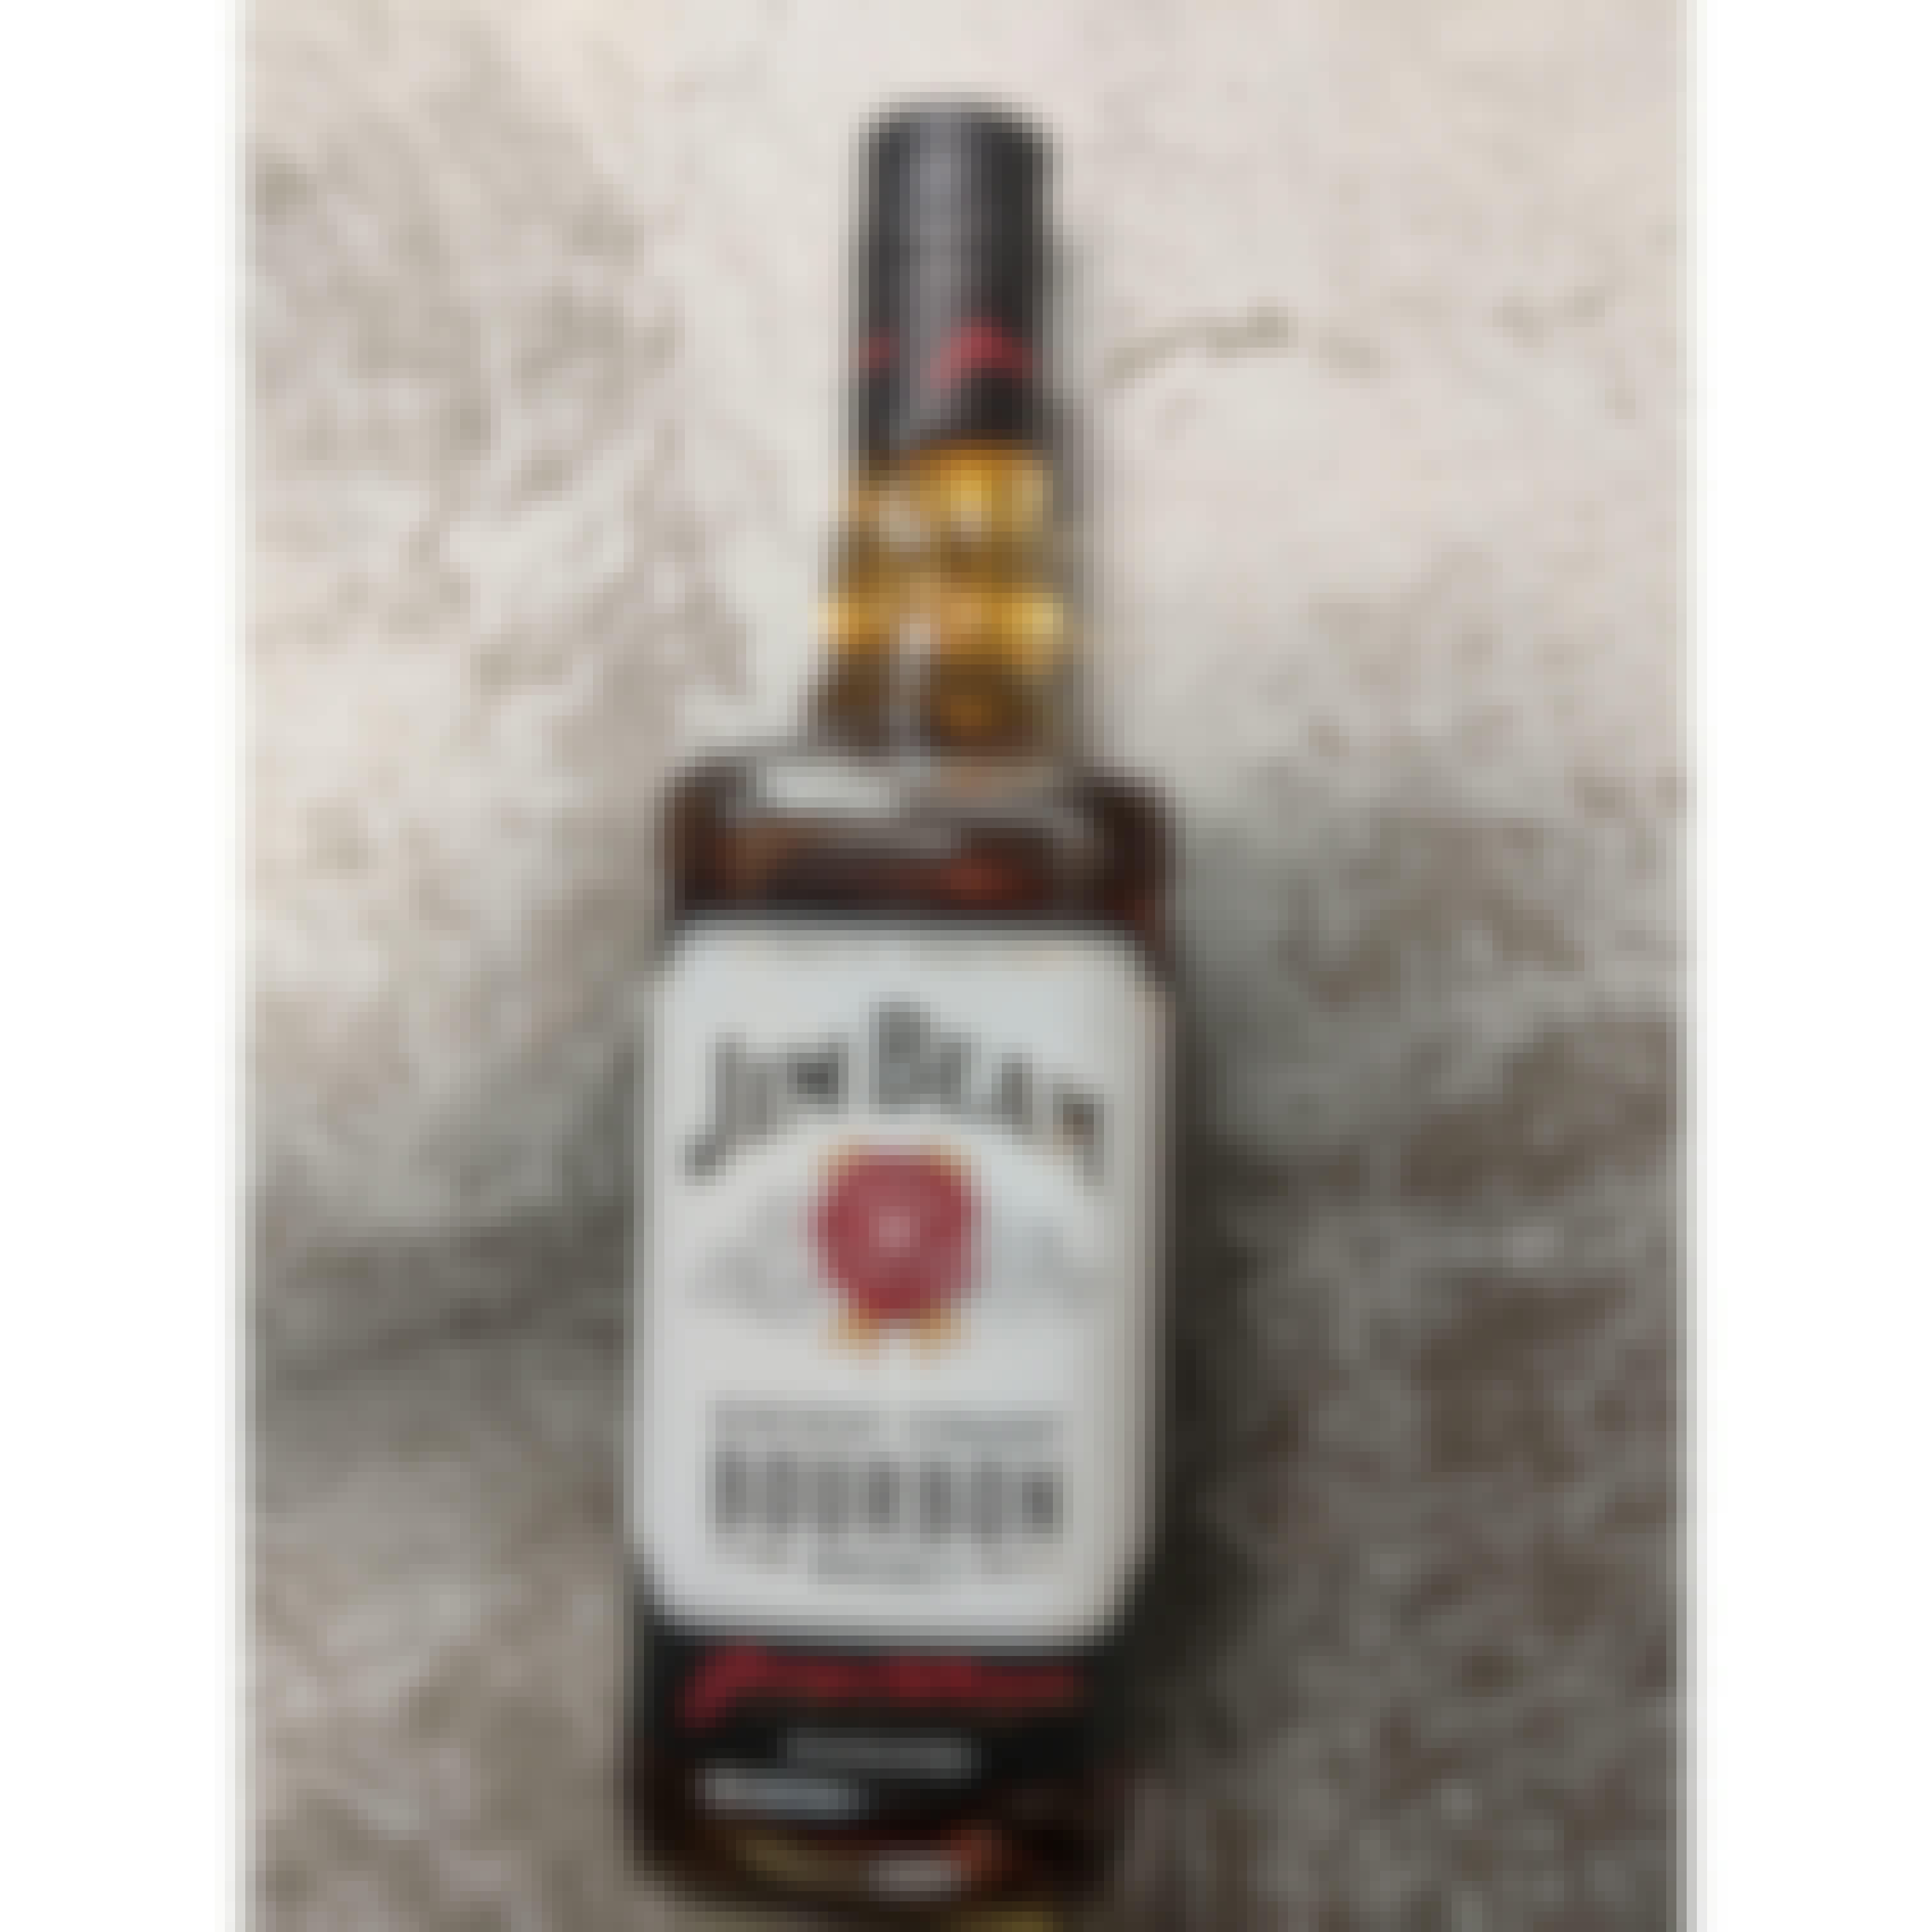 Jim Beam Kentucky Straight Bourbon Whiskey 4 year old 750ml